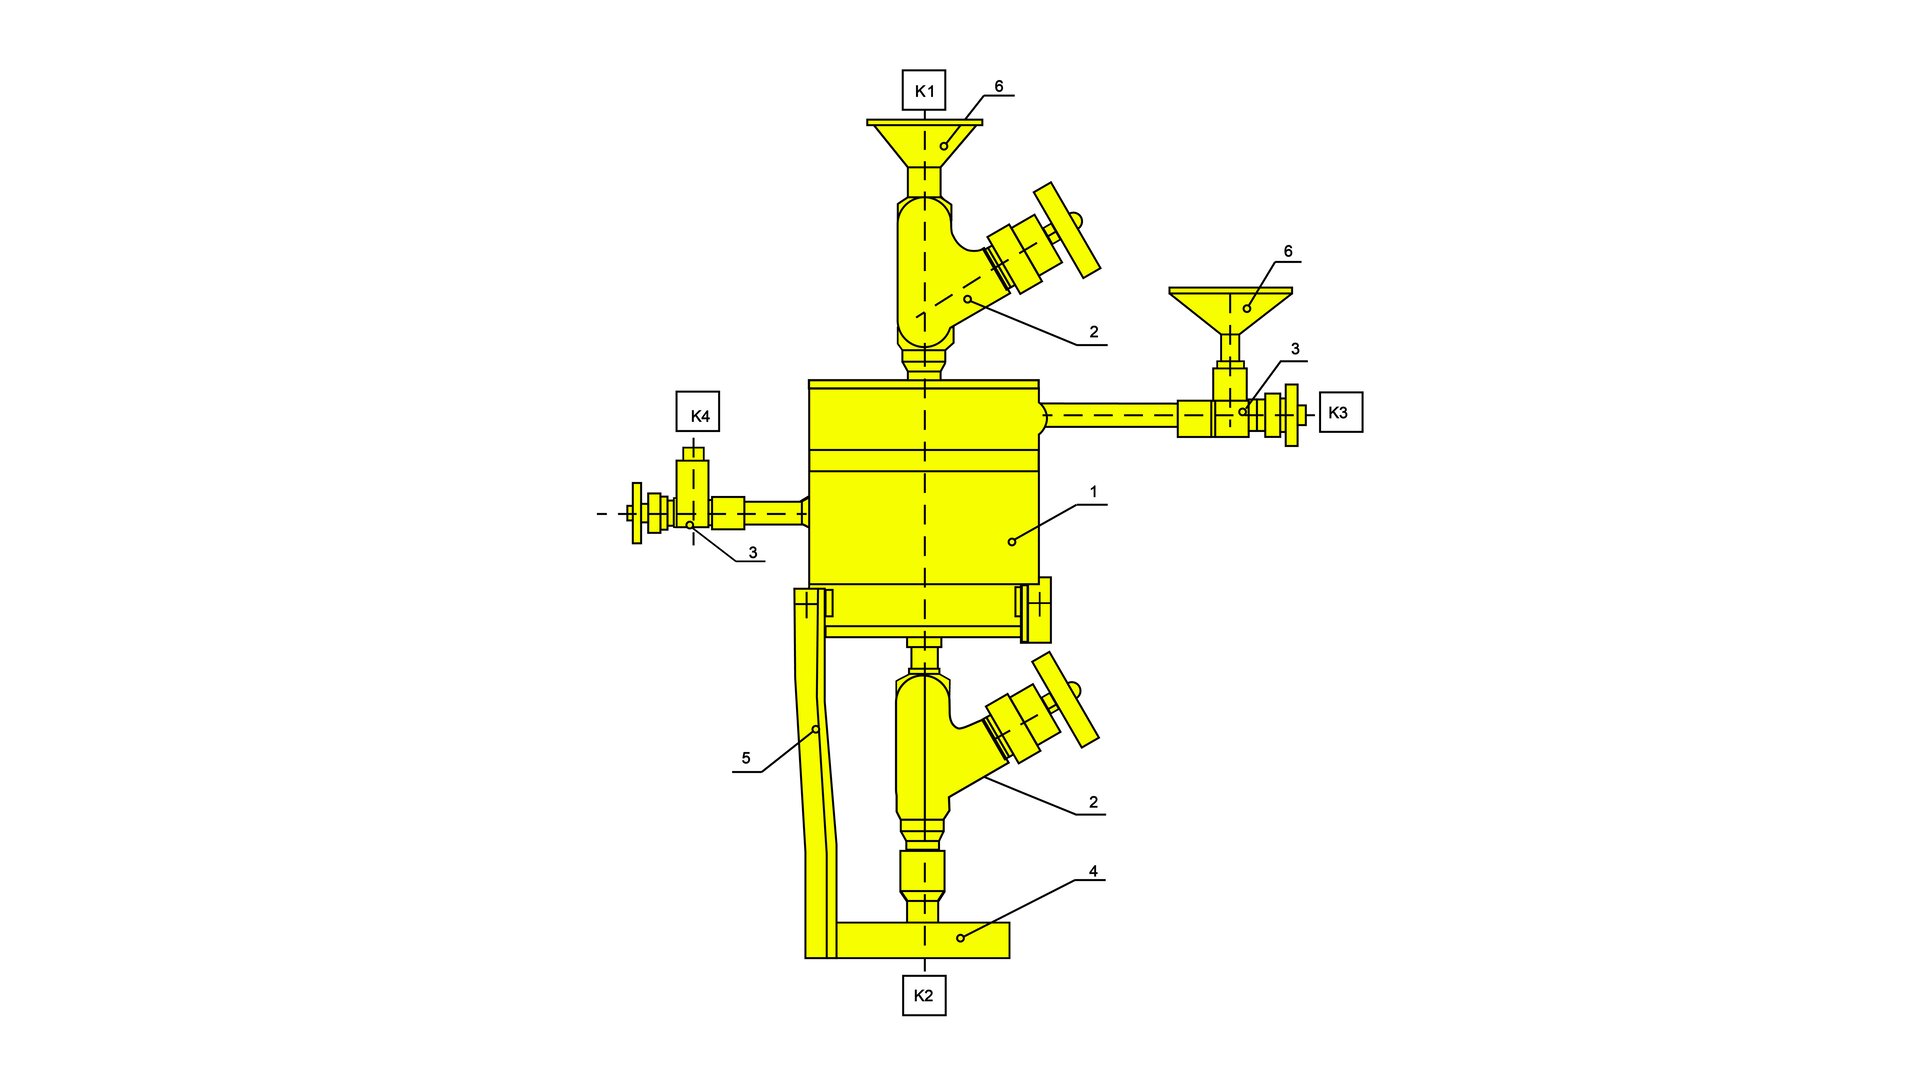 Na zdjęciu widać schemat dawkownika metanolu wraz z opisem. Dawkownik wykorzystywany jest w celu chwilowego zapobieżenia powstania hydratów czyli nietrwałych związków wody w postaci ciekłej z gazem w formie korków. Dlatego na drodze pomiędzy odwiertem a separatorem. do strumienia gazu dawkowany jest metanol. Centralną częścią dawkonika jest jego zbiornik, który narysowany jest jako żółty prostokąt z przyporządkowaną cyfrą 1. Nad nim znajduje się element który rozdziela się na dwie części. Górna część w kształcie lejka ma przypisaną cyfrę 6 i opis lejek, druga główna cześć ma przypisaną cyfrę 2 i opis zawór ciśnieniowy. Zawór zakończony jest elementem przypominającym ;pokrętło. Nad lejkiem znajduje się oznaczenie K1 oznaczające napełnianie metanolem. Po prawej stronie kołnierza znajduje się element w kształcie rury na końcu której znajduje się pokrętło oraz symbol K4 oznaczający kurek manometryczny. Przed pokrętłem do niewielkiego kwadratu poprowadzona jest cienka czarna linia z cyfrą 3 oznaczającą kurek manometryczny. Nad elementem znajduje się lejek z przypisaną cyfrą 6. Poniżej zbiornika metanolu znajduje się zawór ciśnieniowy który ma przypisany cyfrę 2. Po prawej stronie zaworu ciśnieniowego znajduje się pokrętło. Poniżej zaworu znajduje się element w kształcie poziomego cienkiego prostokąta z przypisaną cyfrą 4 oznaczającą kołnierz połączeniowy. Pod kołnierzem znajduje się symbol K2  określający spust.Do lewego końca kołnierza przylega cienki prostokątny element, który skierowany jest pionowo w górę i który łączy się ze zbiornikiem metanolu. Elementowi temu przypisana jest cyfra 5 oznaczająca płaskownik wzmacniający. Po lewej stronie kołnierza znajduje się element w kształcie rury do którego przyłączony jest cześć w kształcie pionowego cienkiego prostokąta z przypisaną cyfrą 3 oznaczającą kurek manometryczny. Sekcja ta zakończona jest elementem w kształcie kurka. Nad oznaczeniem kurka znajduje się symbol K4 określający kurek manometryczny. Poniżej rysunku znajduje się następujący podpis zawierający symbole i cyfry wraz z ich znaczeniem. K1. Napełnianie metanolem K2-. Spust. K3 Przelew. K4. Kurek manometryczny. 1. Zbiornik metanolu. 2. Zawór ciśnieniowy. 3. Kurek manometryczny. 4. Kołnierz połączeniowy. 5. Płaskownik wzmacniający. 6. Lejek.